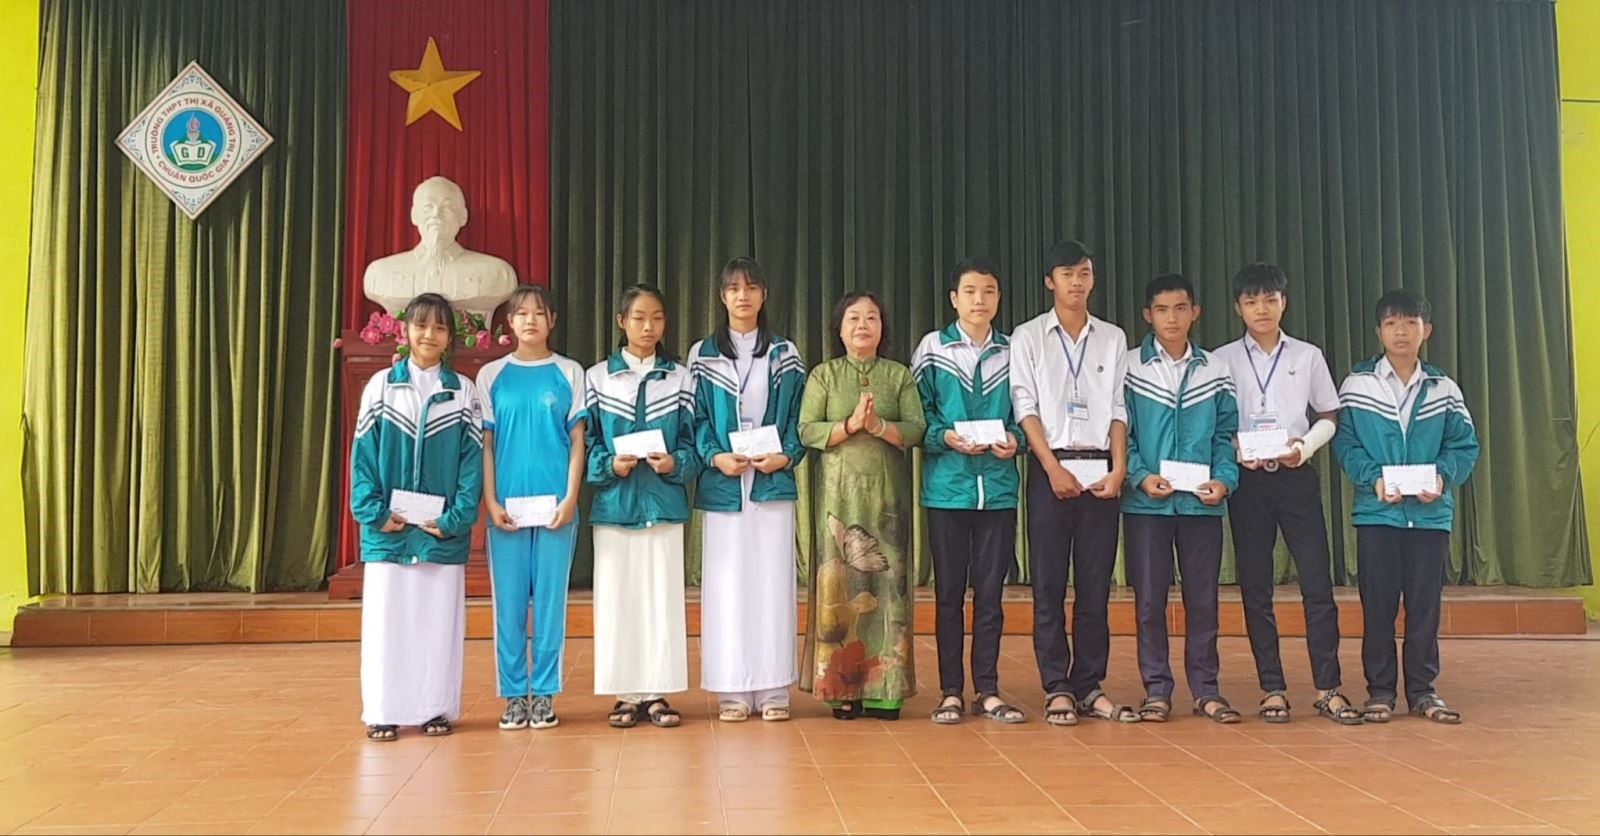 Quỹ học bổng Seeds Vòng tay Thái Bình được trao cho các em học sinh hiếu học có hoàn cảnh khó khăn tại trường THPT Thị xã Quảng Trị.